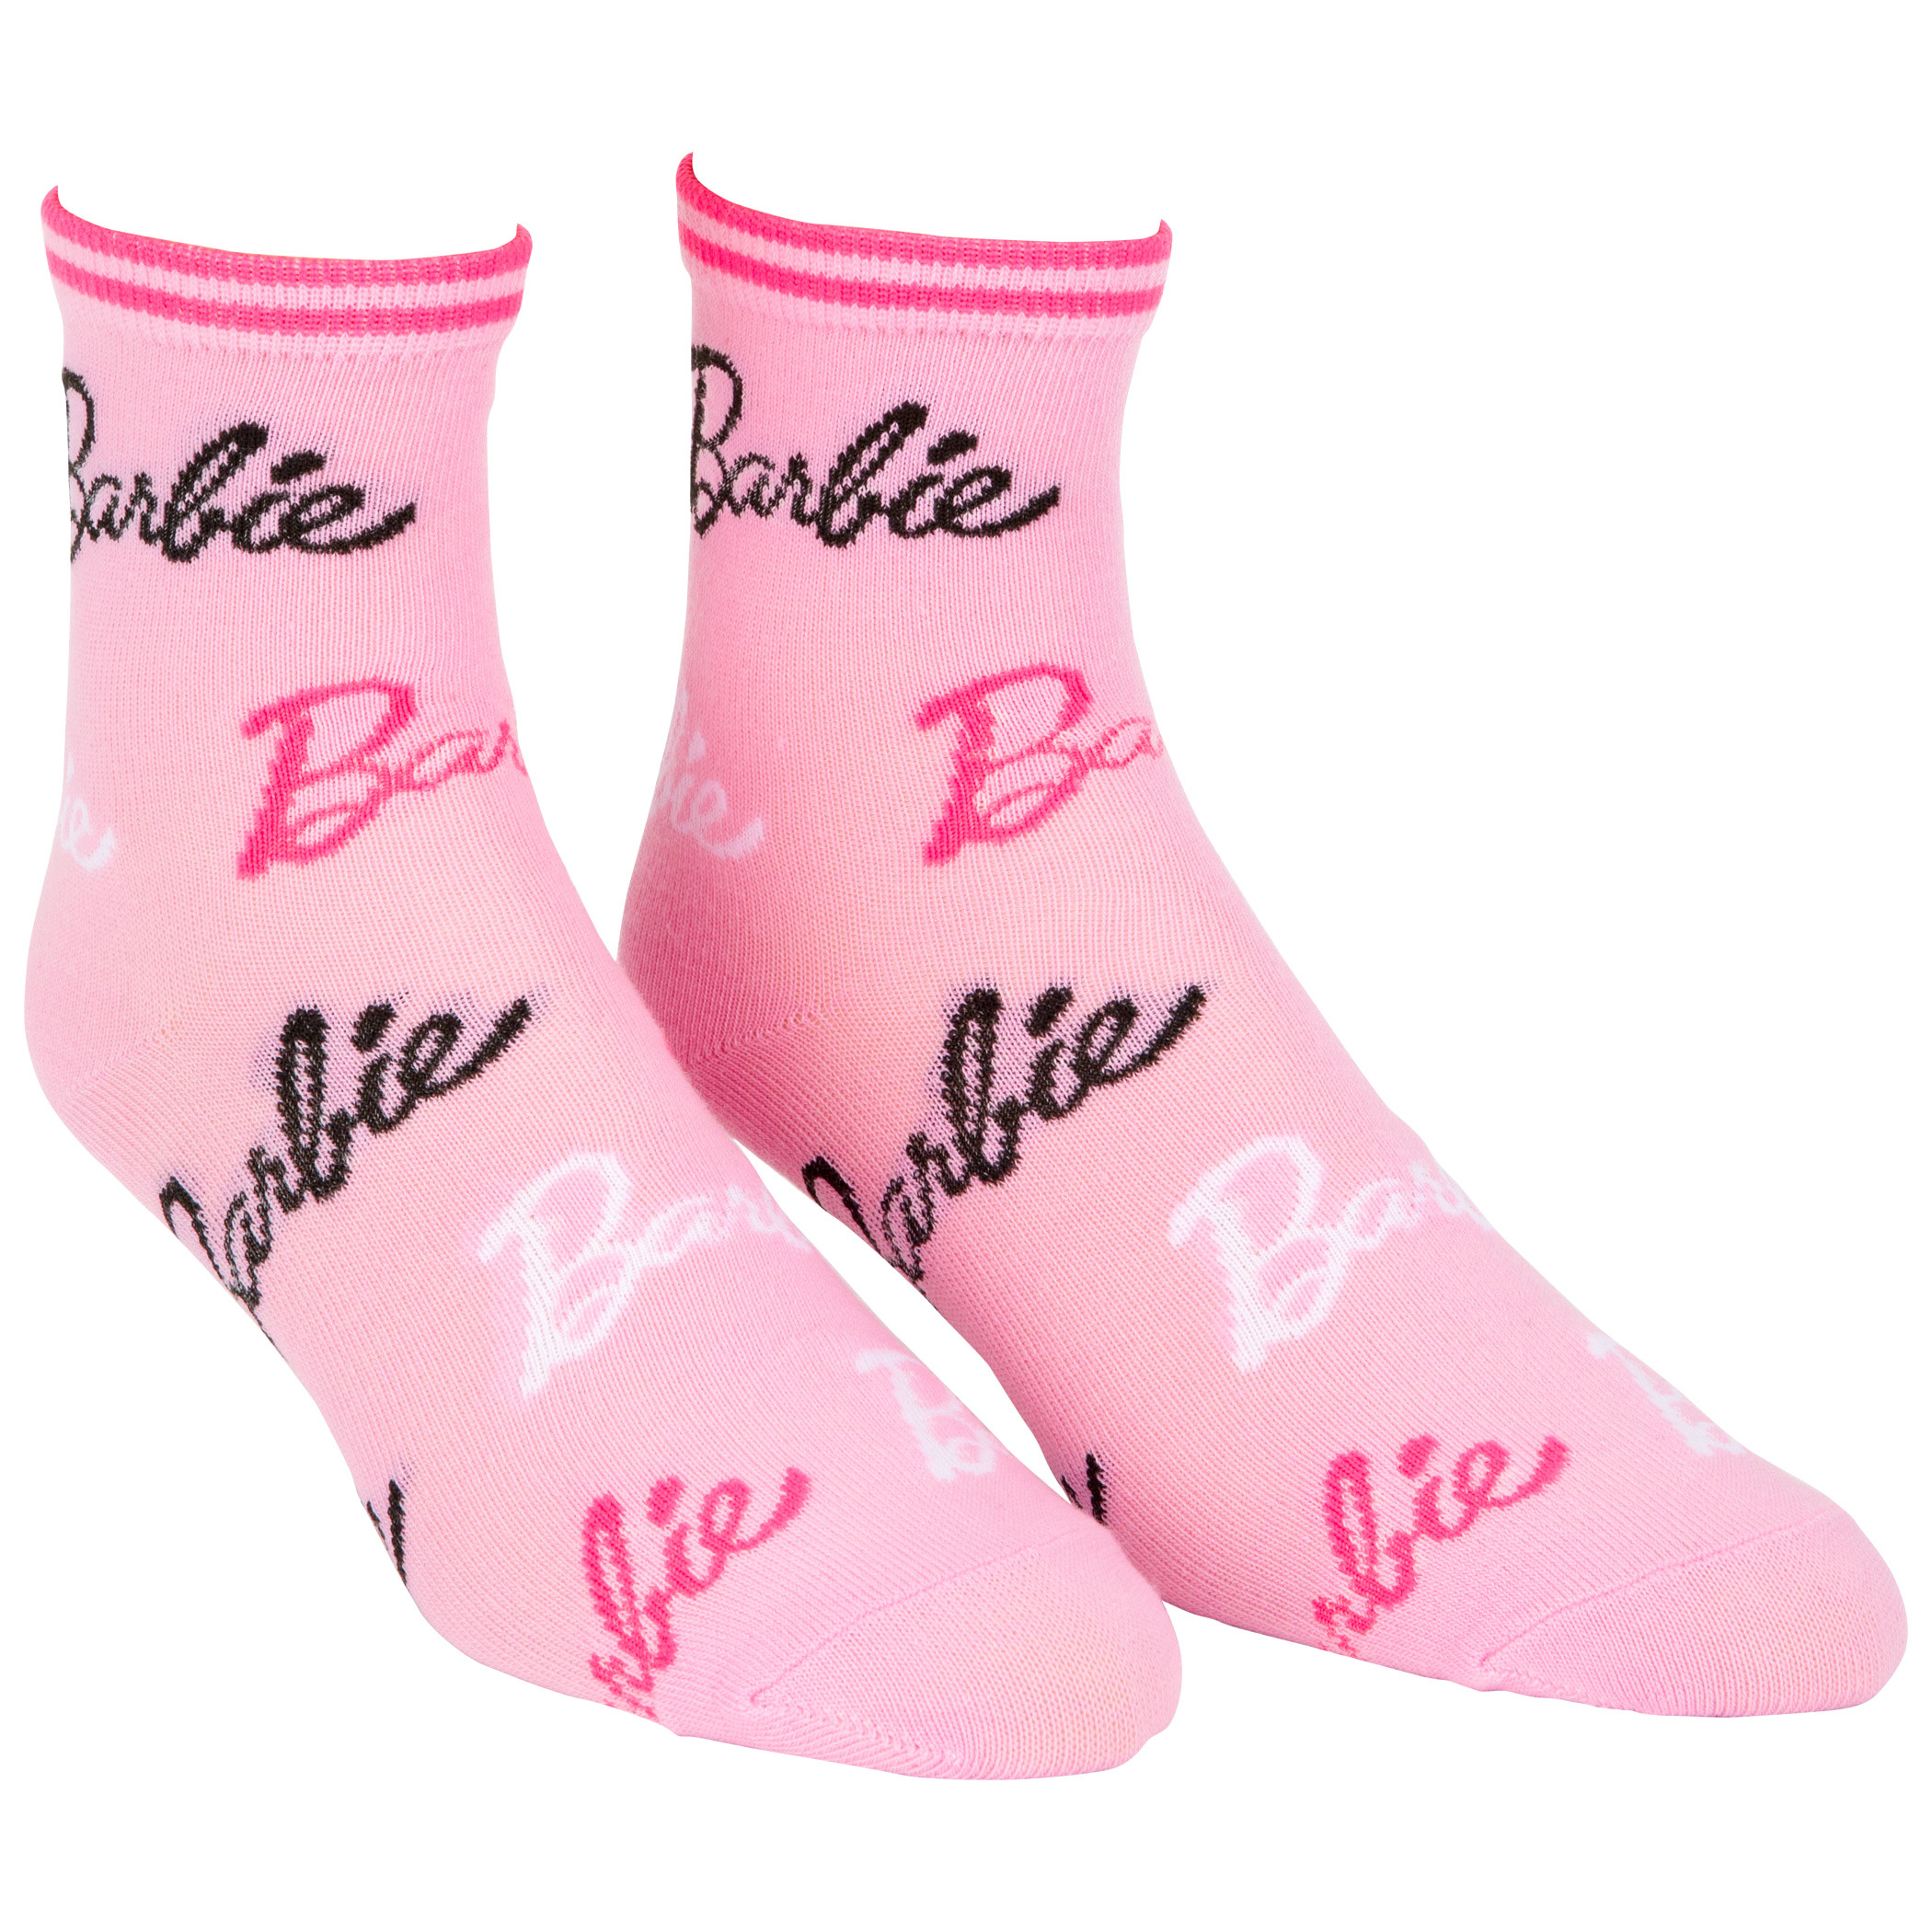 Barbie Logos Women's Crew Socks 2-Pack